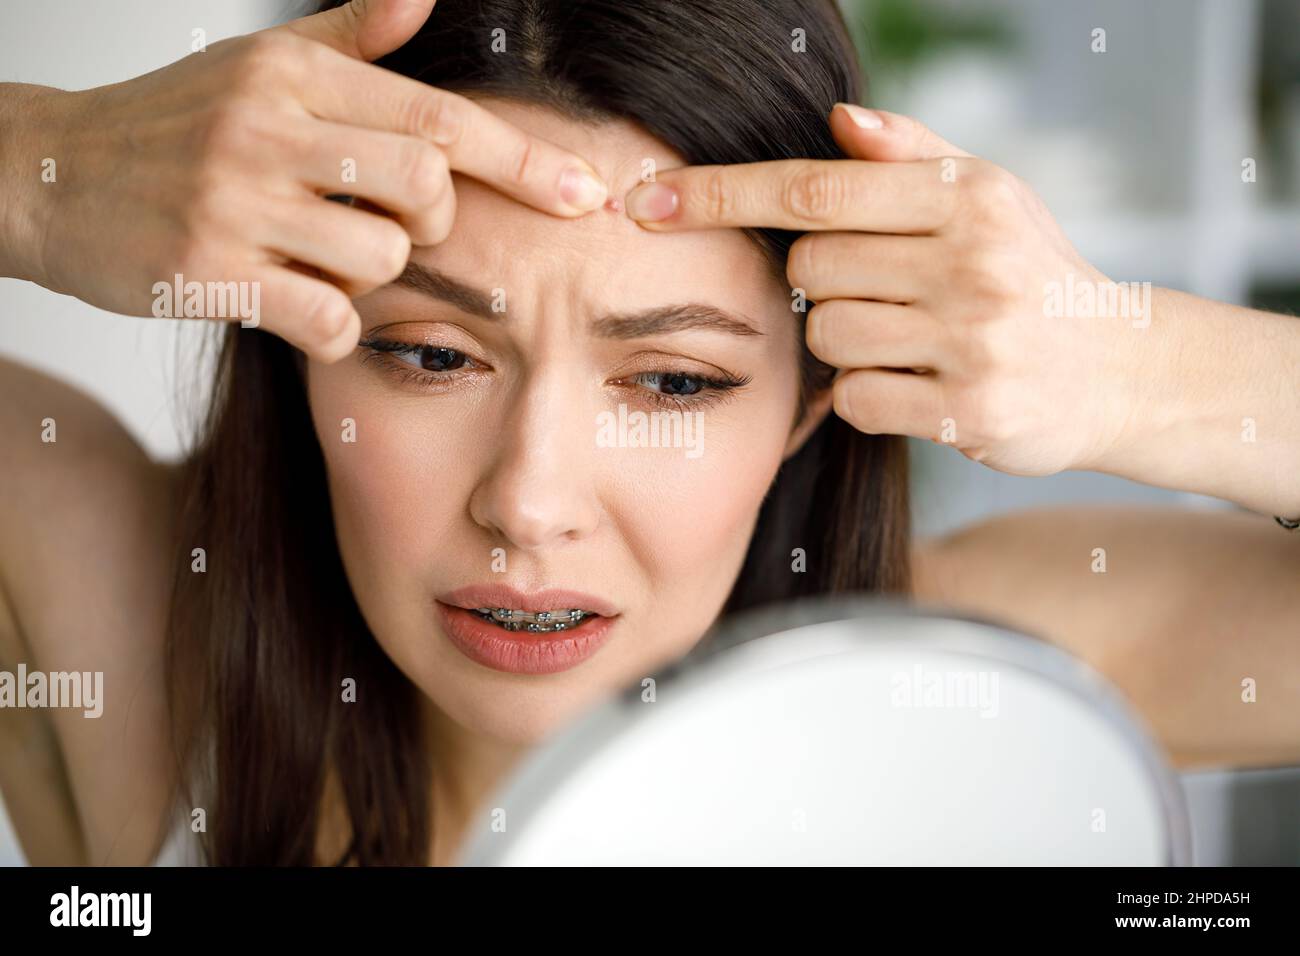 Eine Frau zerquetscht einen Pickel, während sie in den Spiegel schaut. Stockfoto